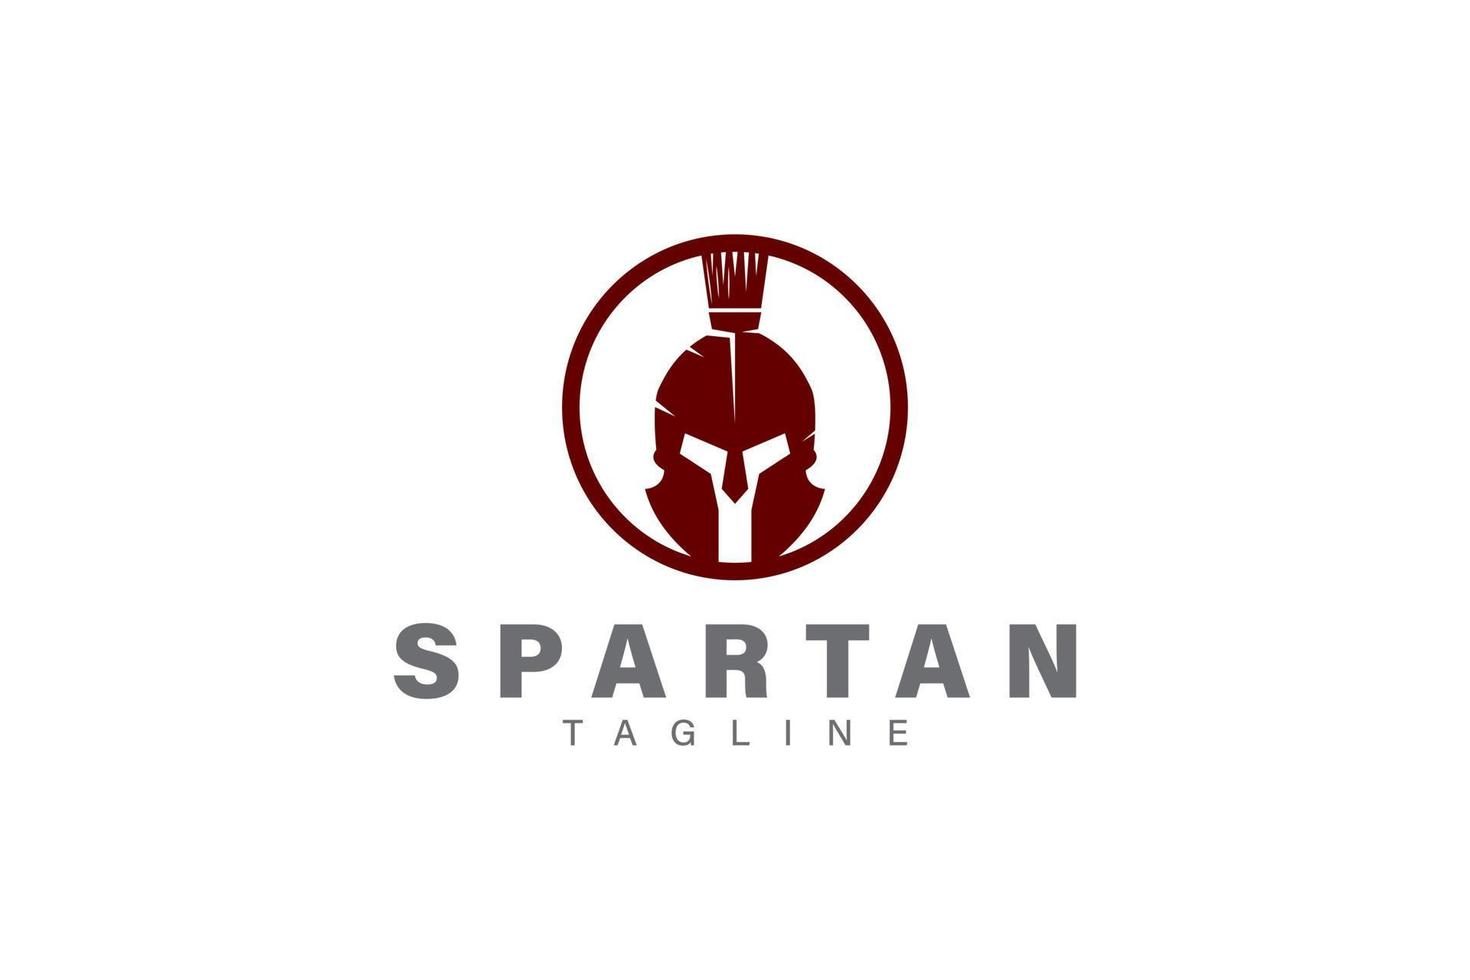 Spartan logo design vector